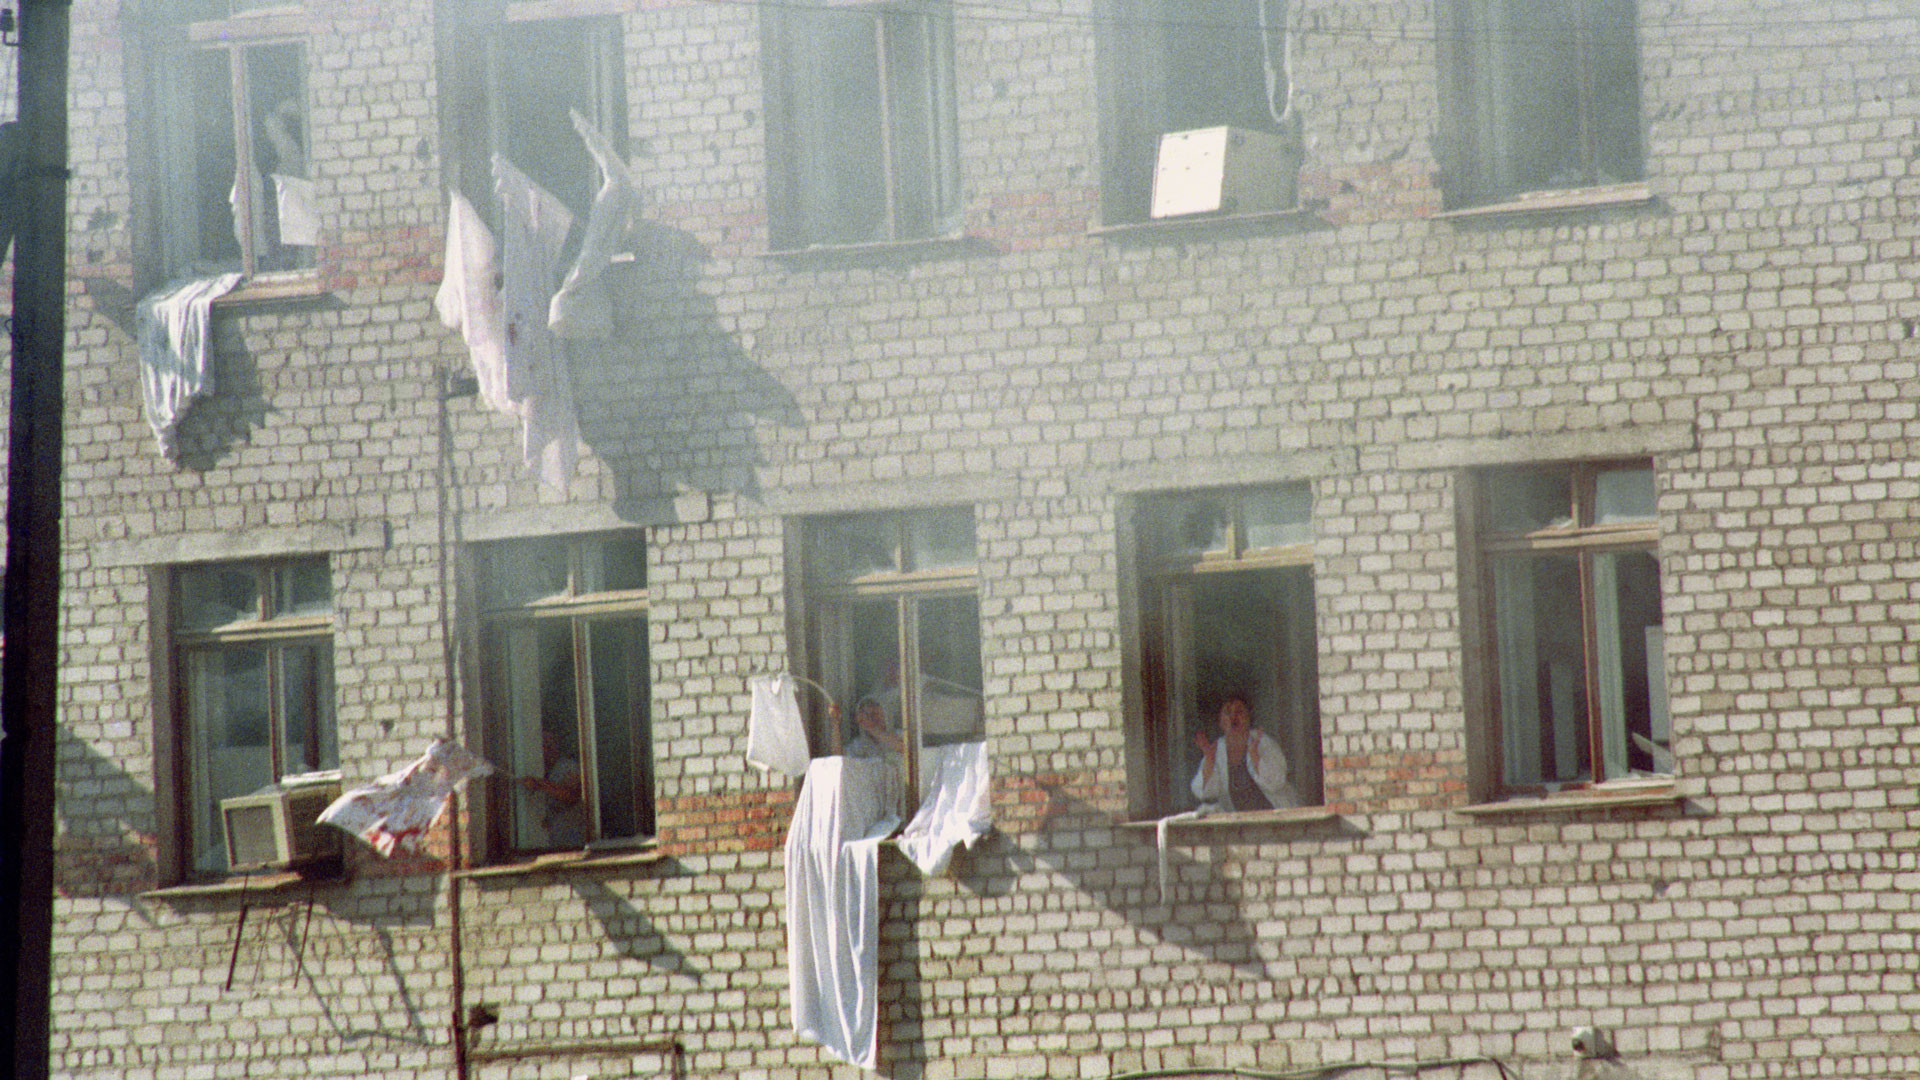 Буденновск 1995 больница захват. Захват заложников в Буденновске 1995. Террористический акт в будённовске (14—19 июня 1995). Буденновск 14 июня 1995 года. Штурм больницы в Буденновске 1995.